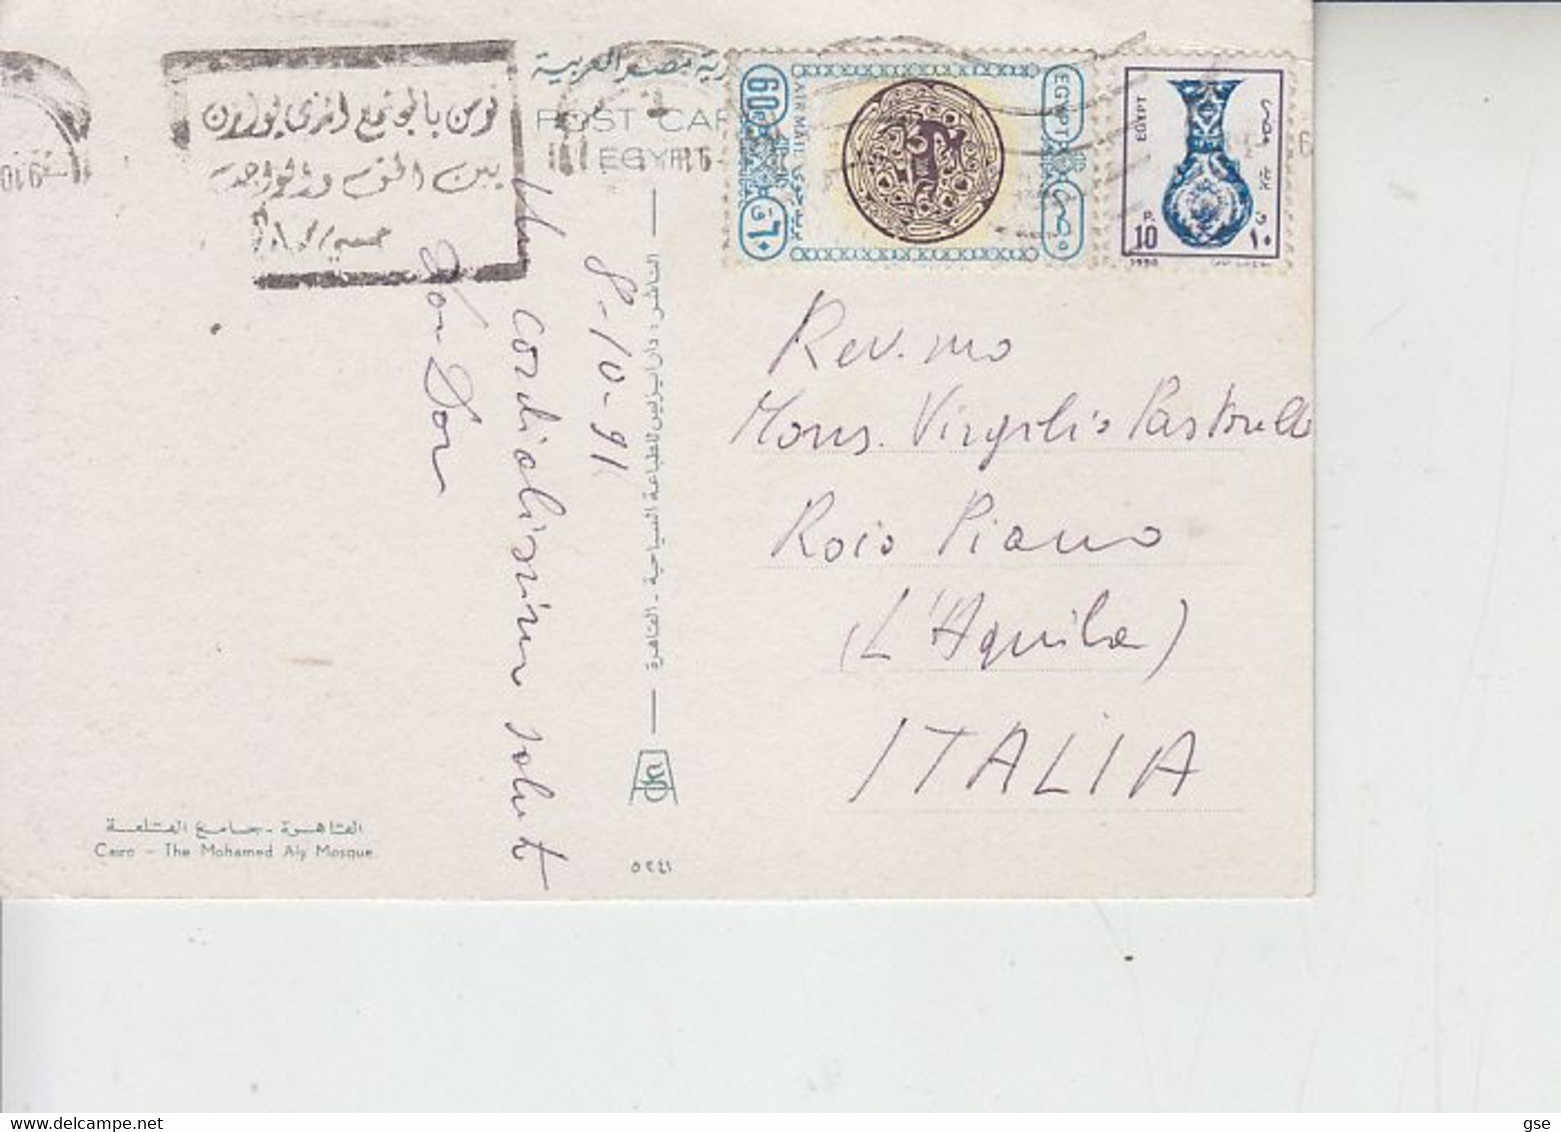 EGITTO  1991 - Cartolina  -  Egitto  In Italia - Moschea - Cairoa - Storia Postale